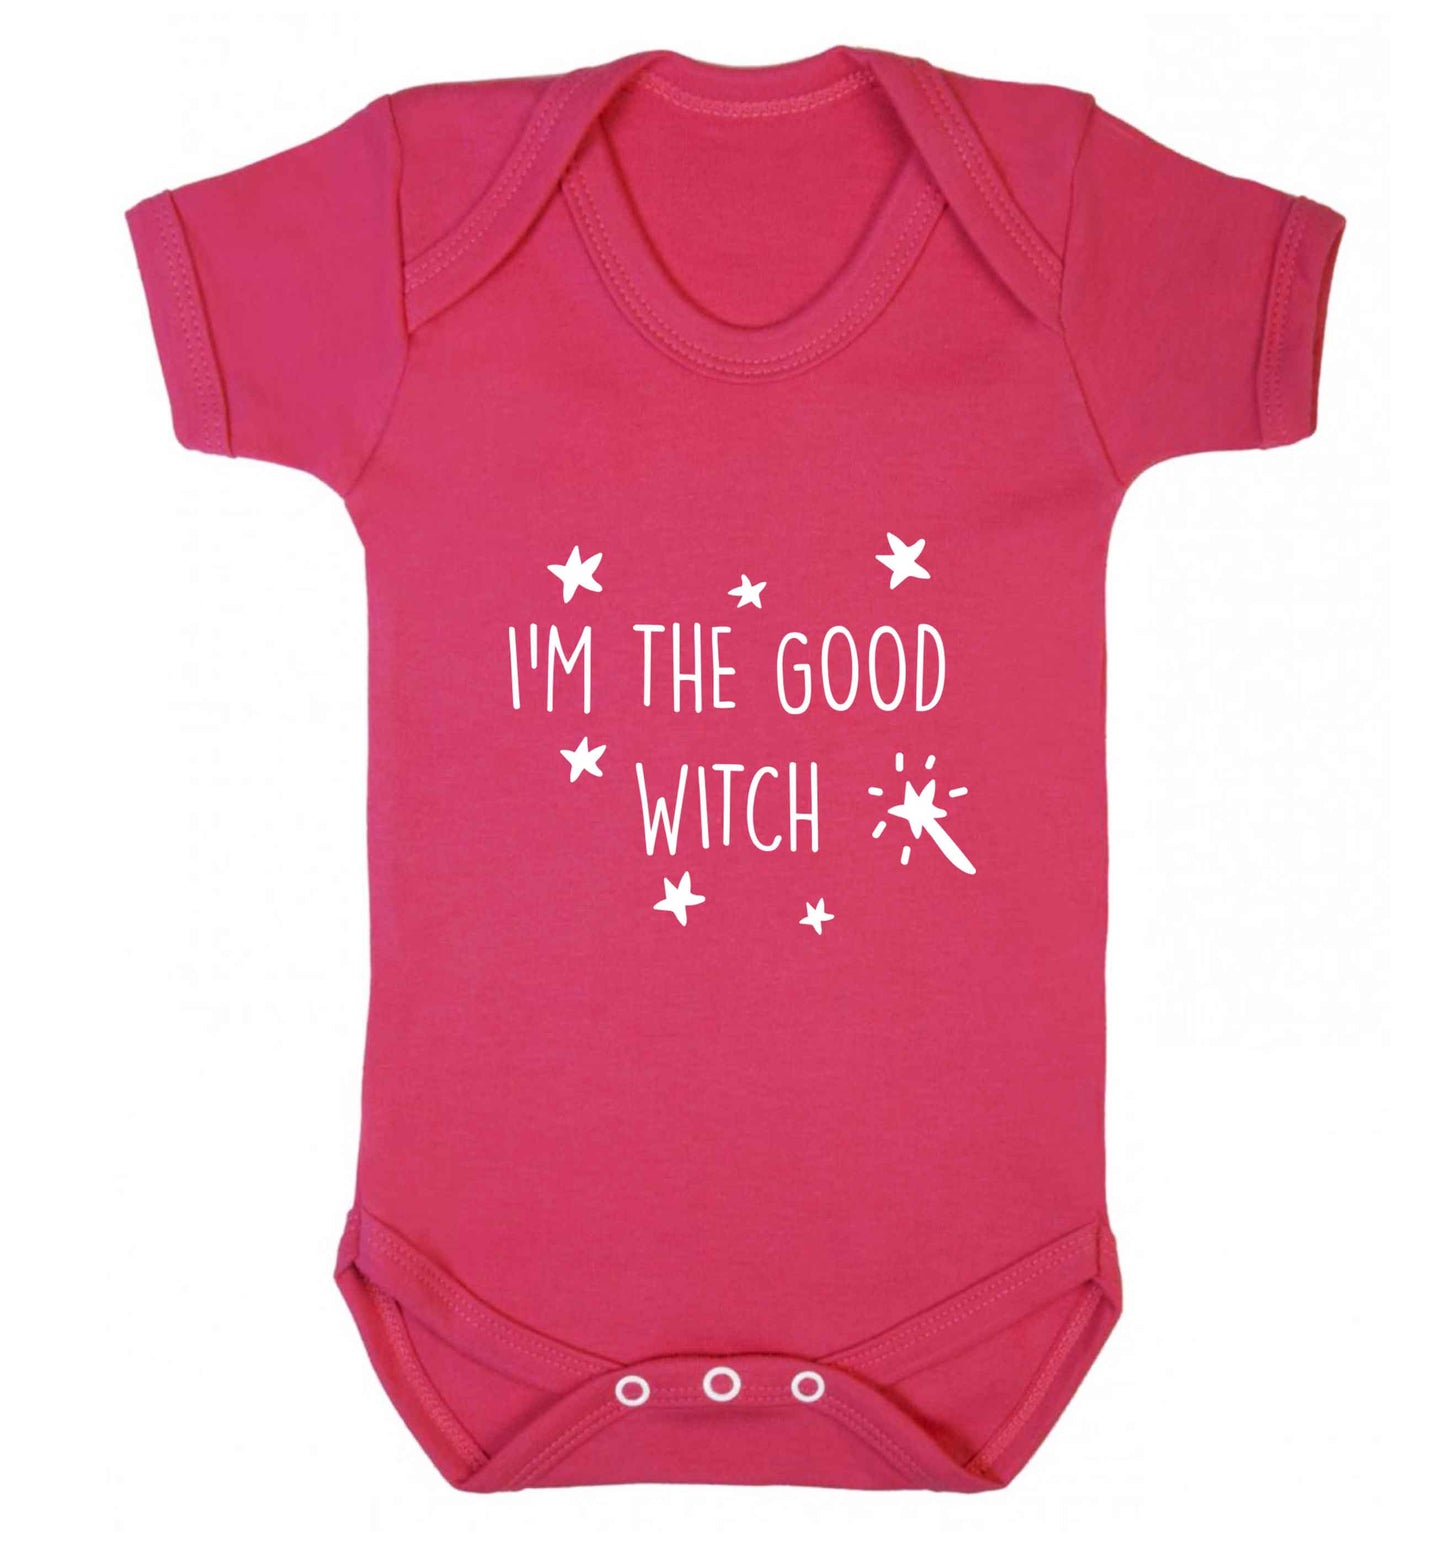 Good witch baby vest dark pink 18-24 months